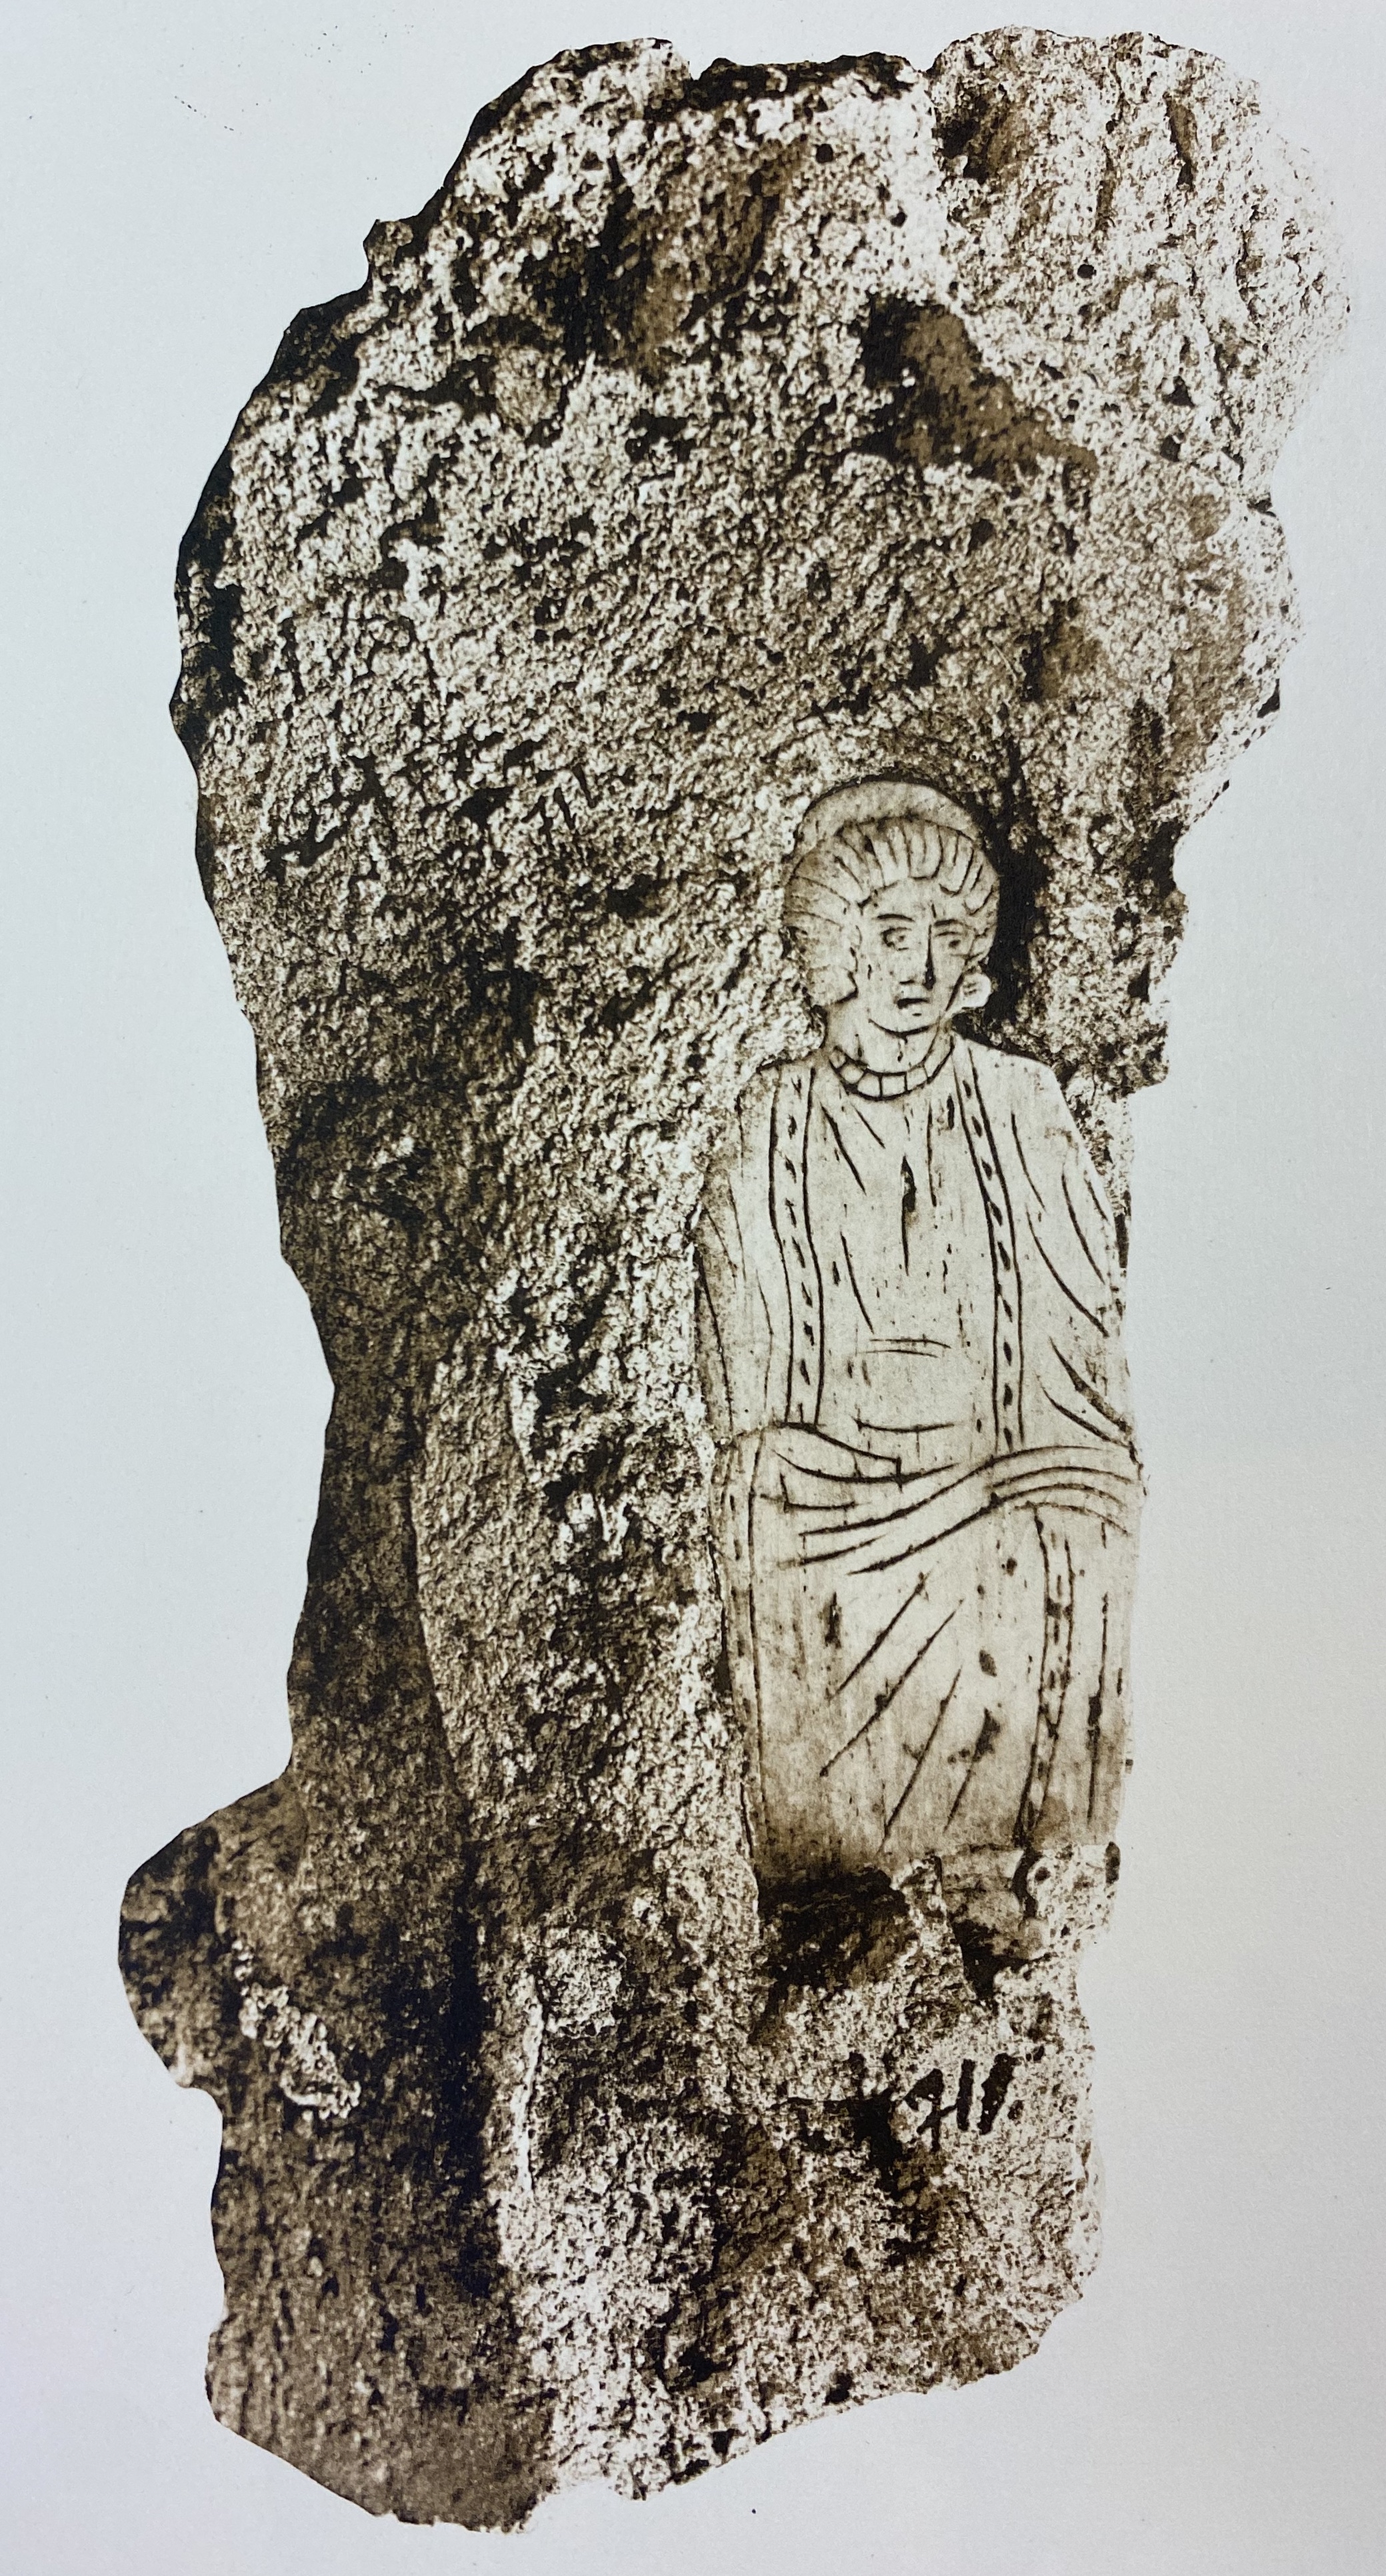 Bone plaque representing female figure set in mortar.